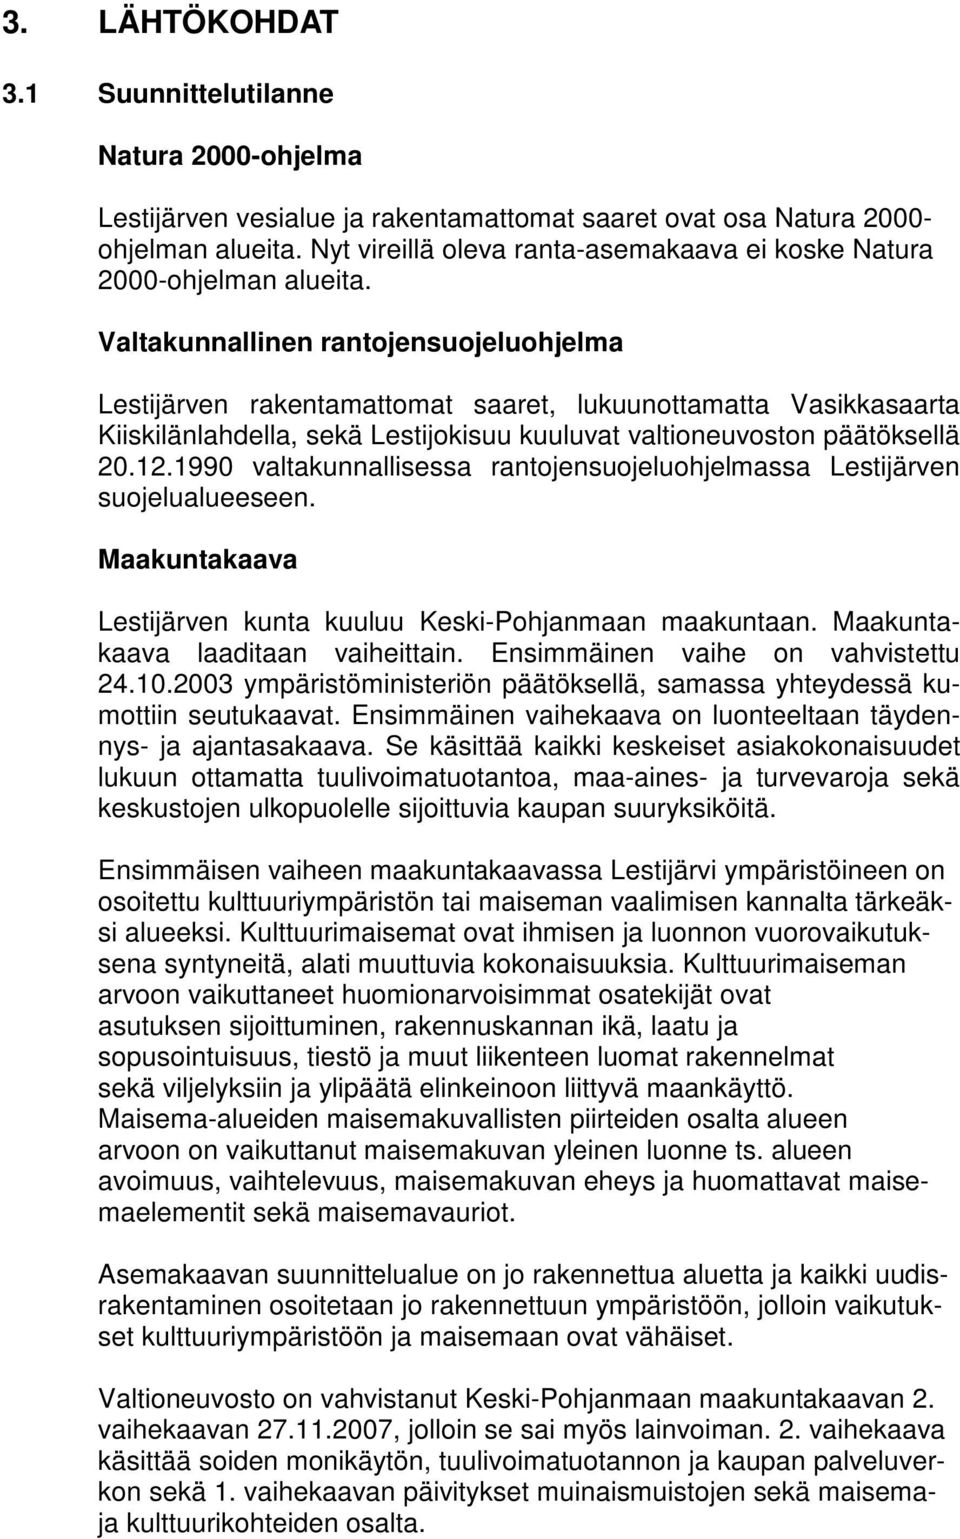 Valtakunnallinen rantojensuojeluohjelma Lestijärven rakentamattomat saaret, lukuunottamatta Vasikkasaarta Kiiskilänlahdella, sekä Lestijokisuu kuuluvat valtioneuvoston päätöksellä 20.12.